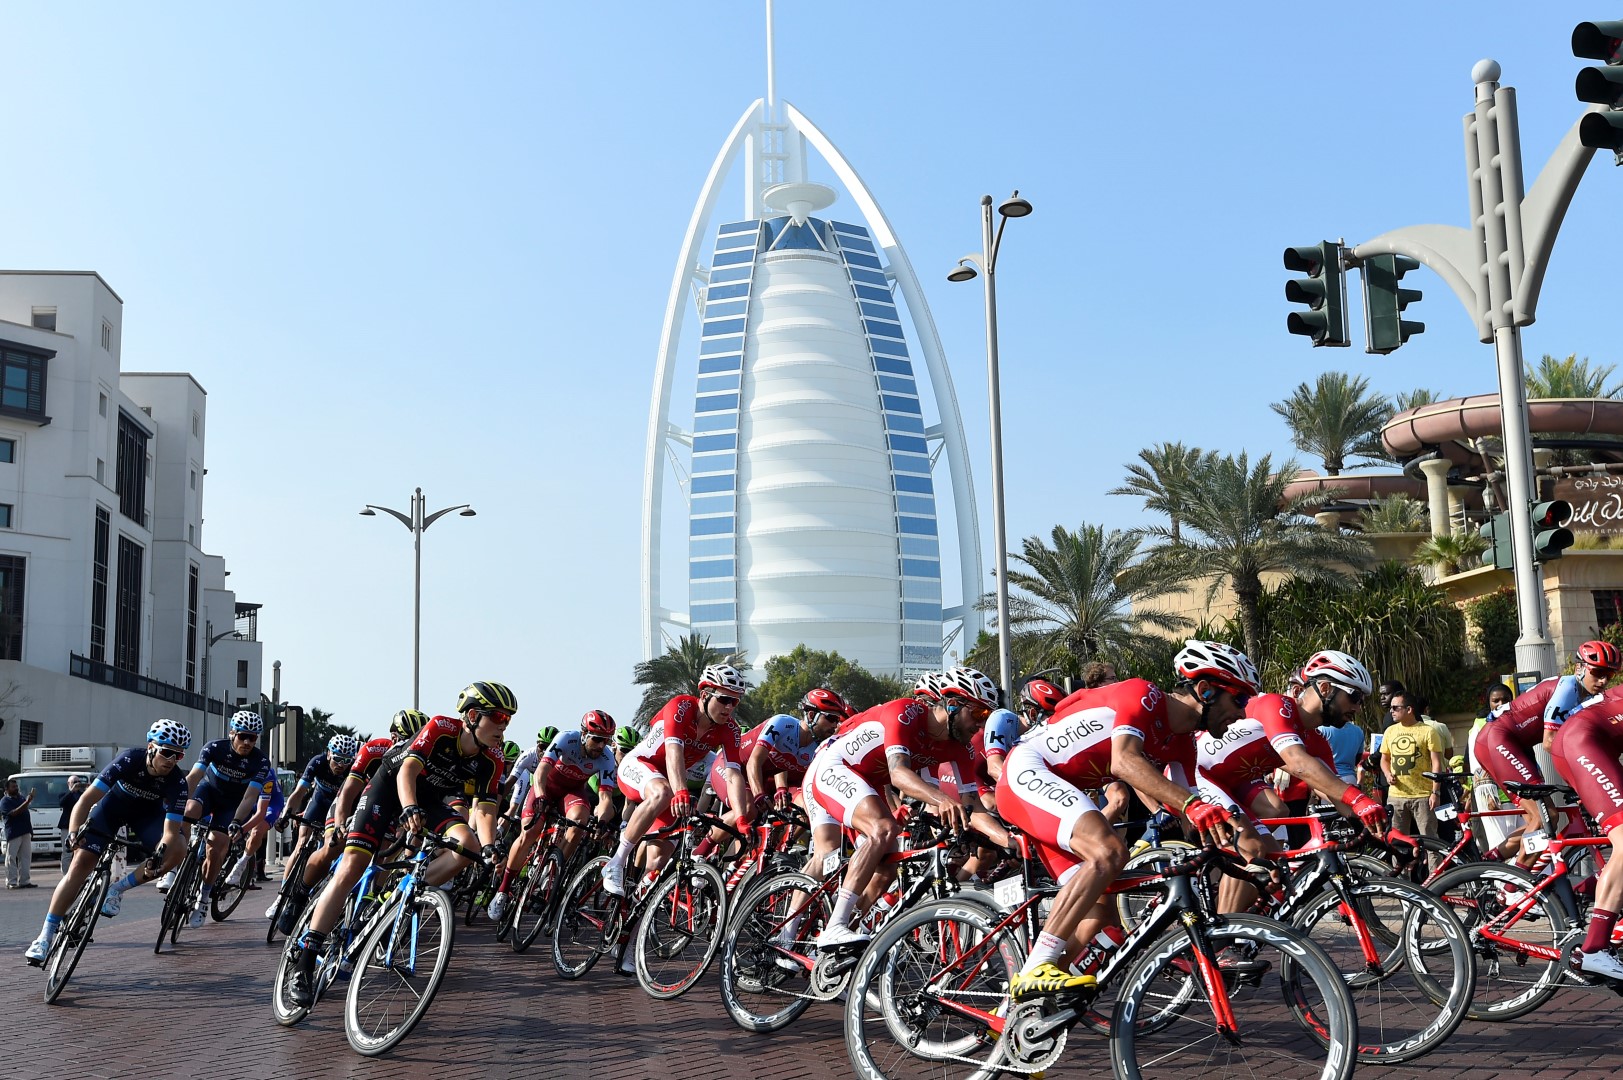 وكالة أنباء الإمارات - "طواف الإمارات" يمر بأشهر المعالم السياحية في مرحلة دبي لمسافة 165 كلم - اخبار الامارات ENN